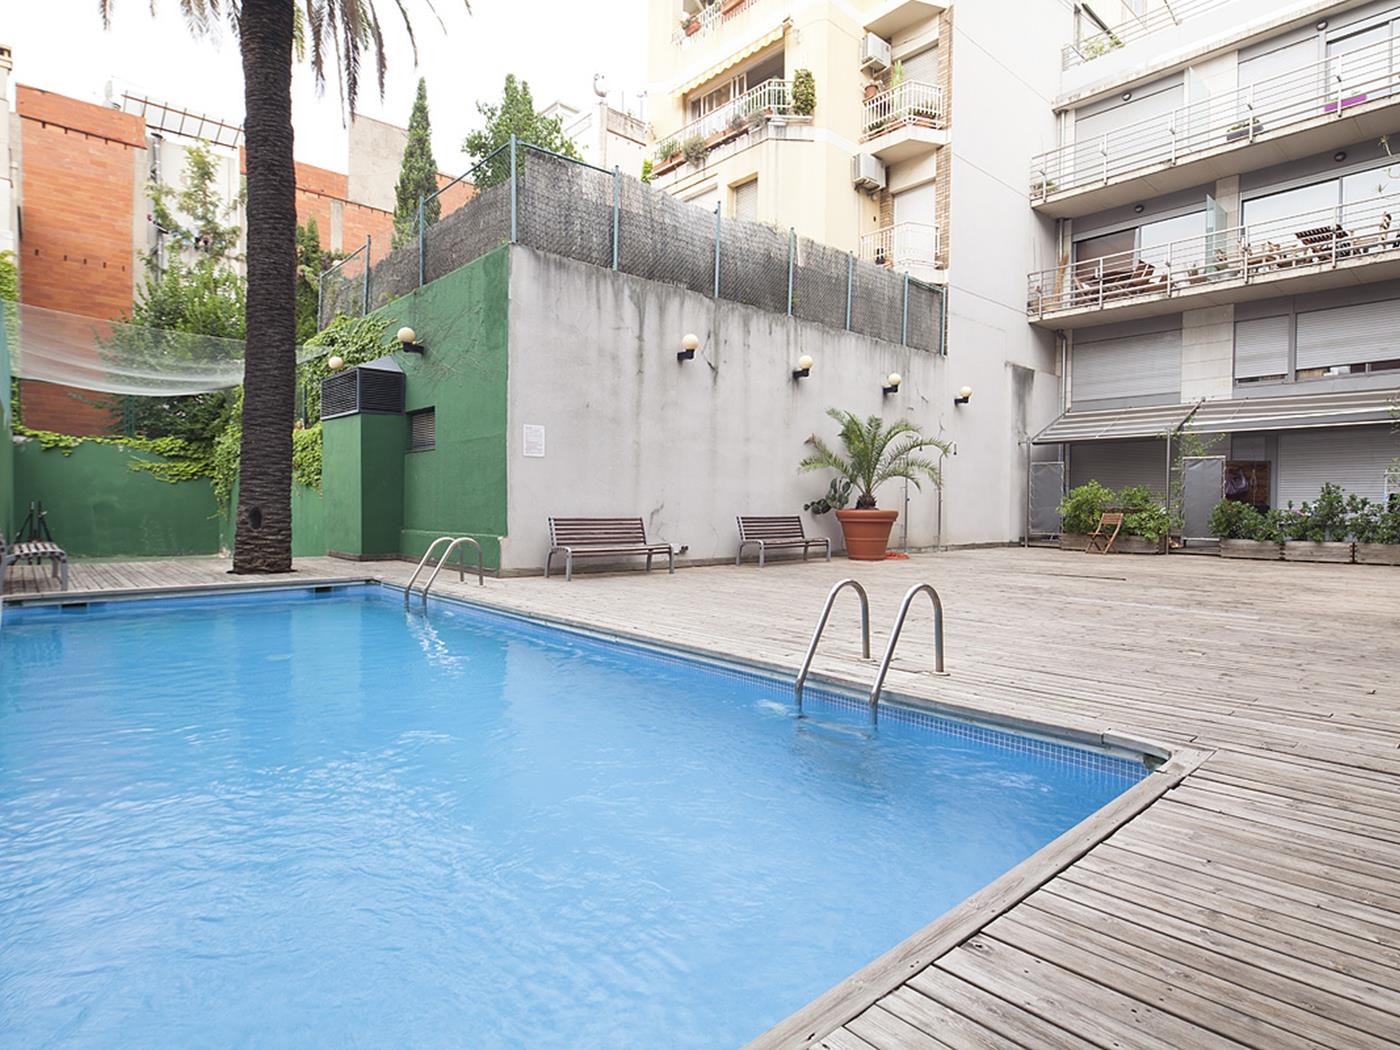 Appartamento con piscina per 8 persone vicino al centro, Putxet - My Space Barcelona Appartamenti